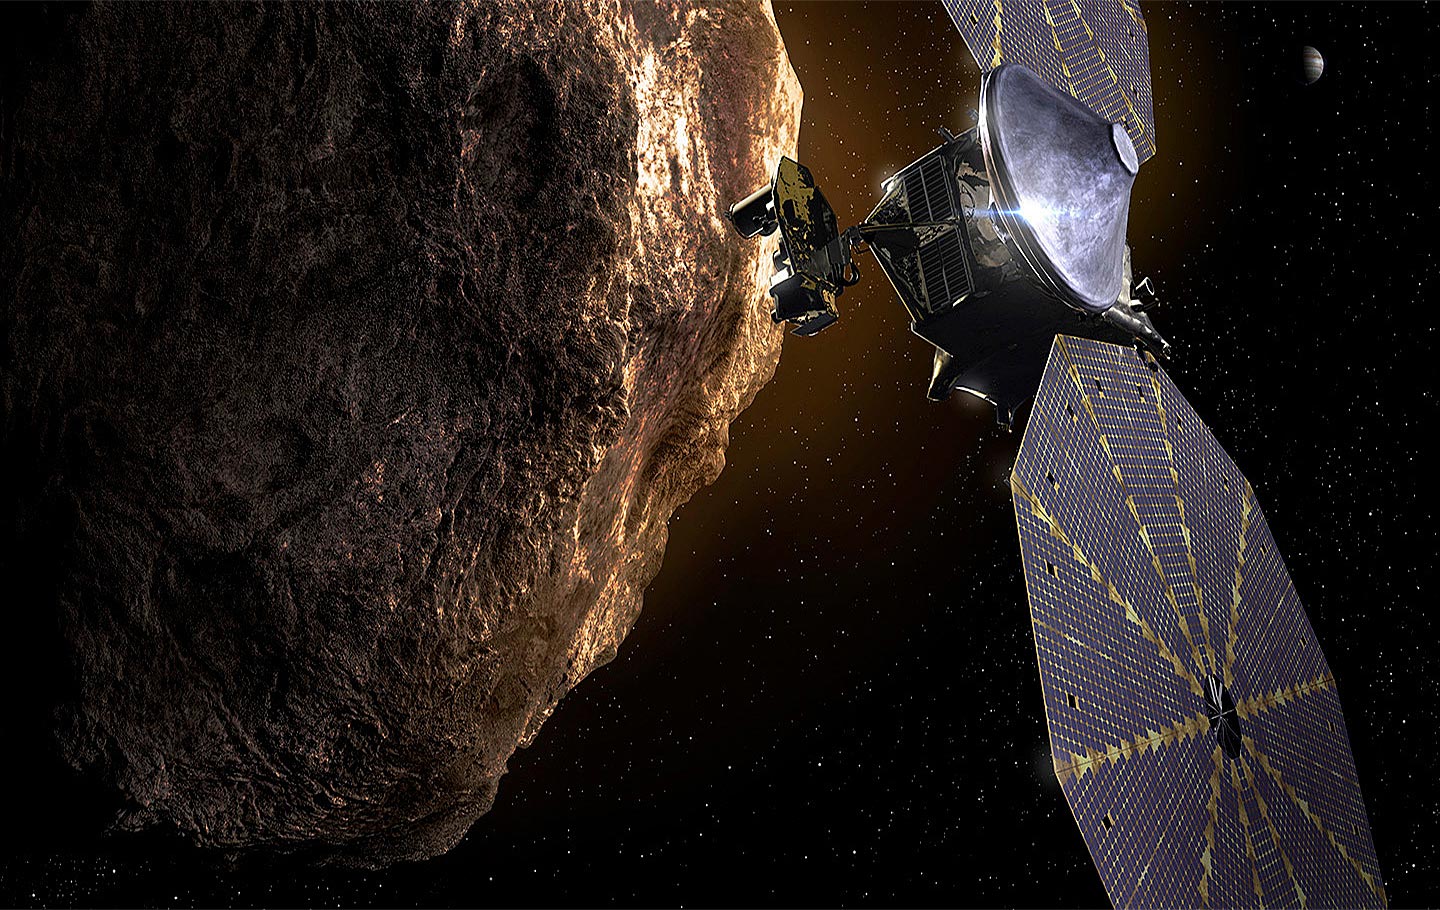 Ilustración de la nave espacial Lucy cerca de un gran asteroide con Júpiter visible en el fondo distante. Crédito: Southwest Research Institute